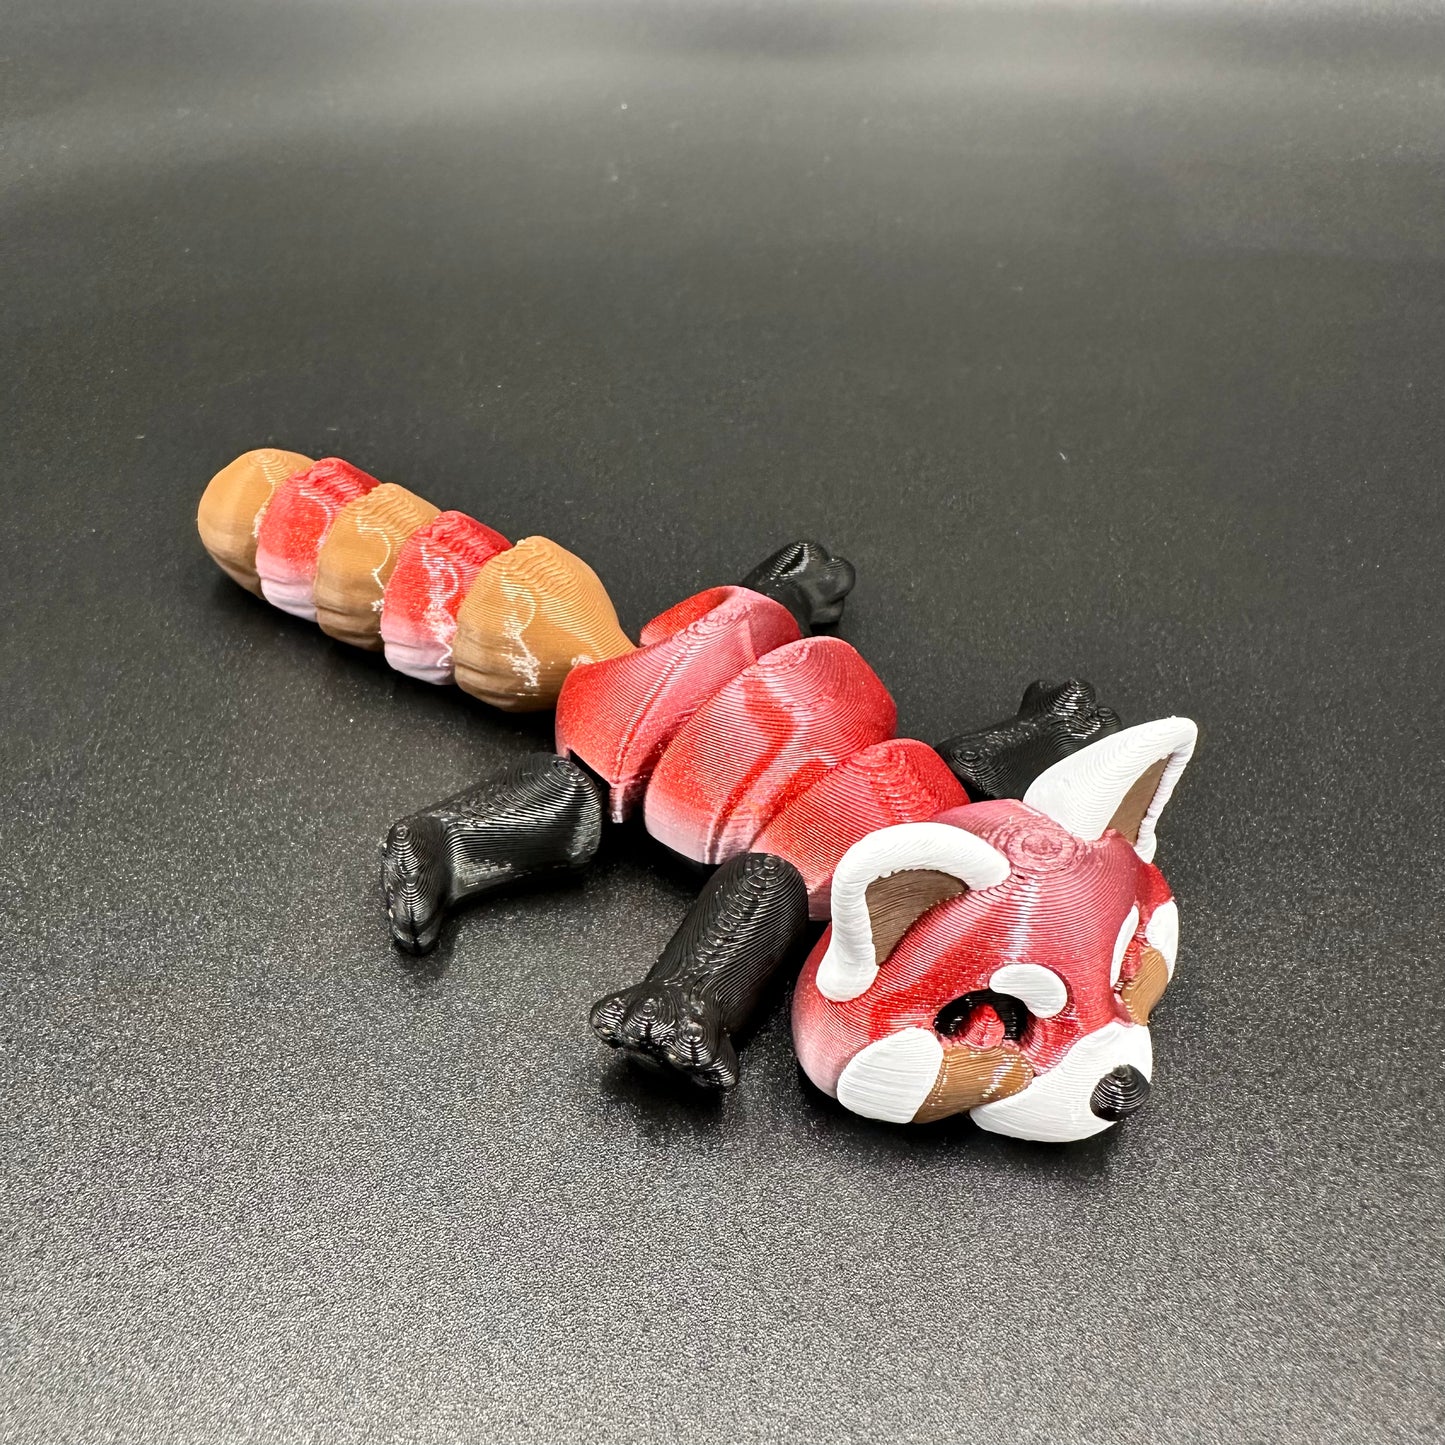 3D Printed Red Panda